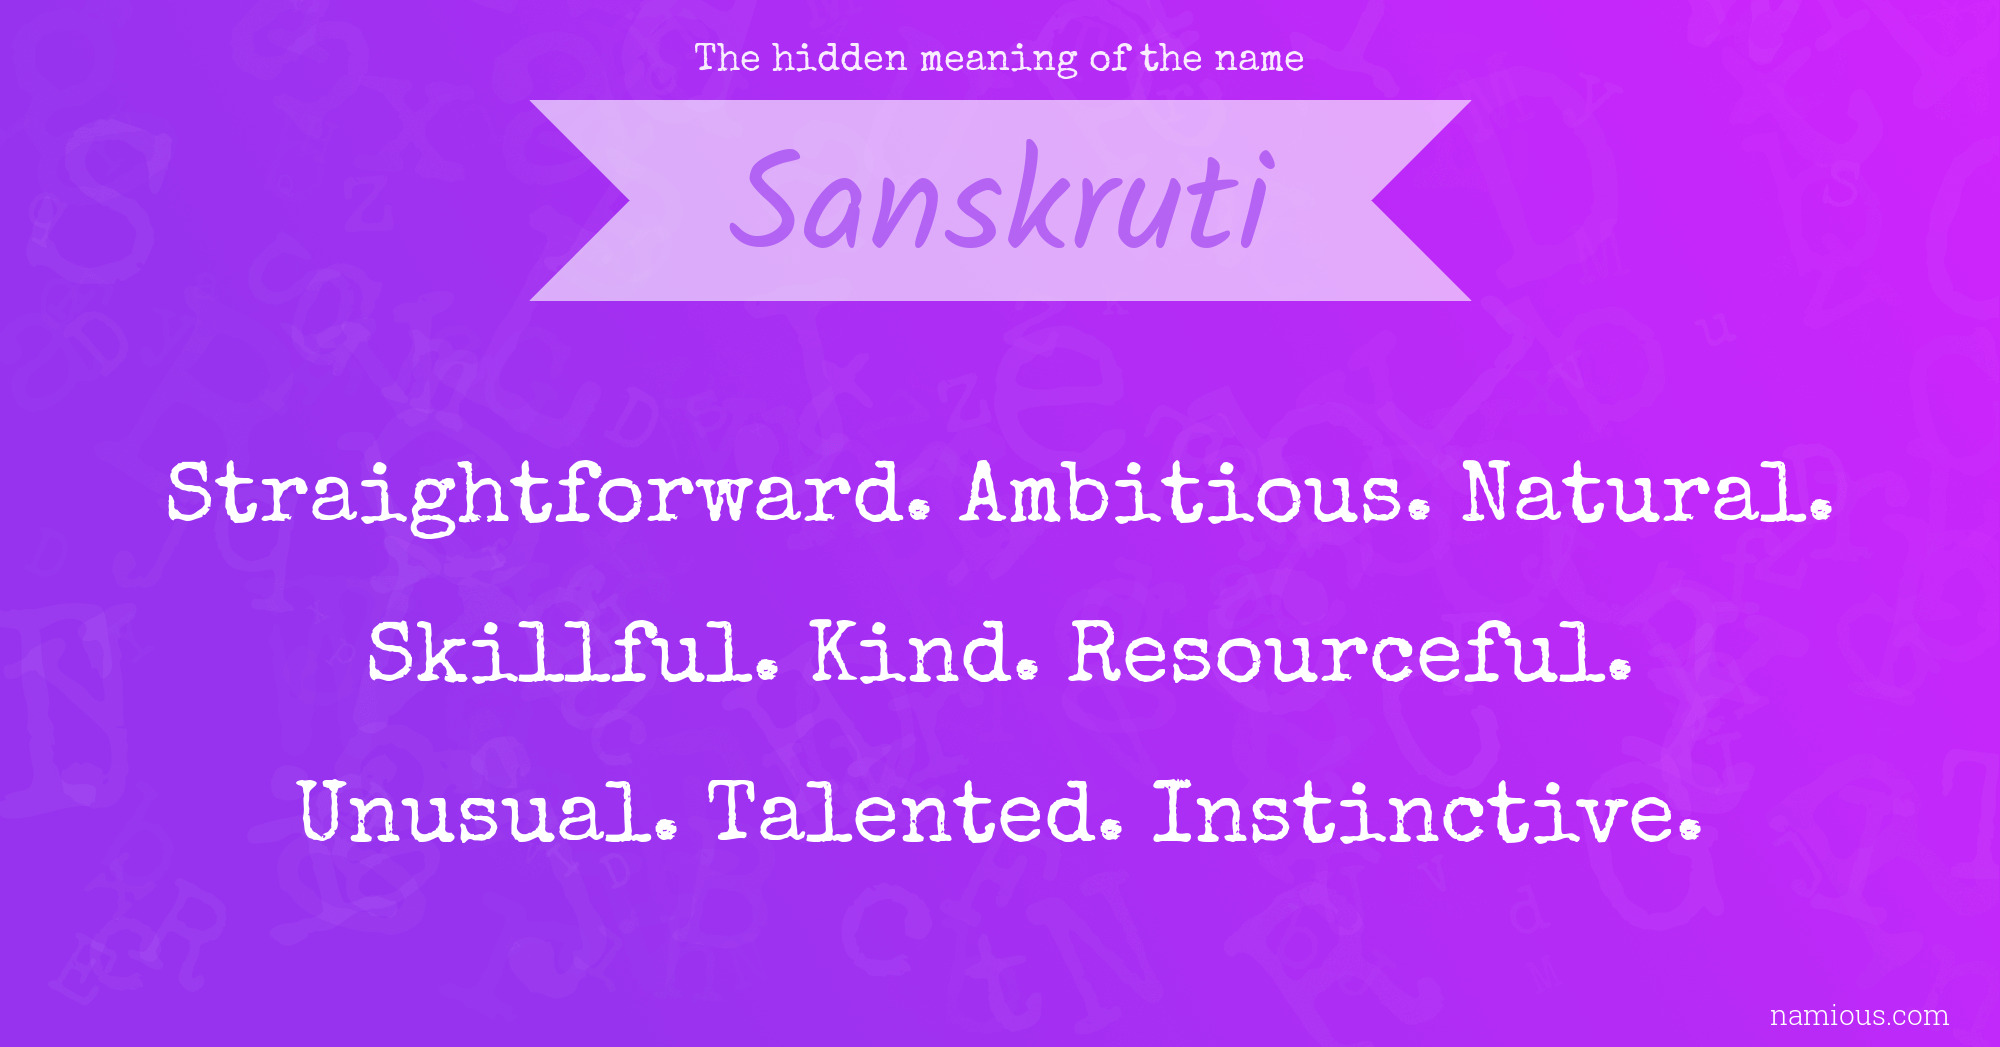 The hidden meaning of the name Sanskruti